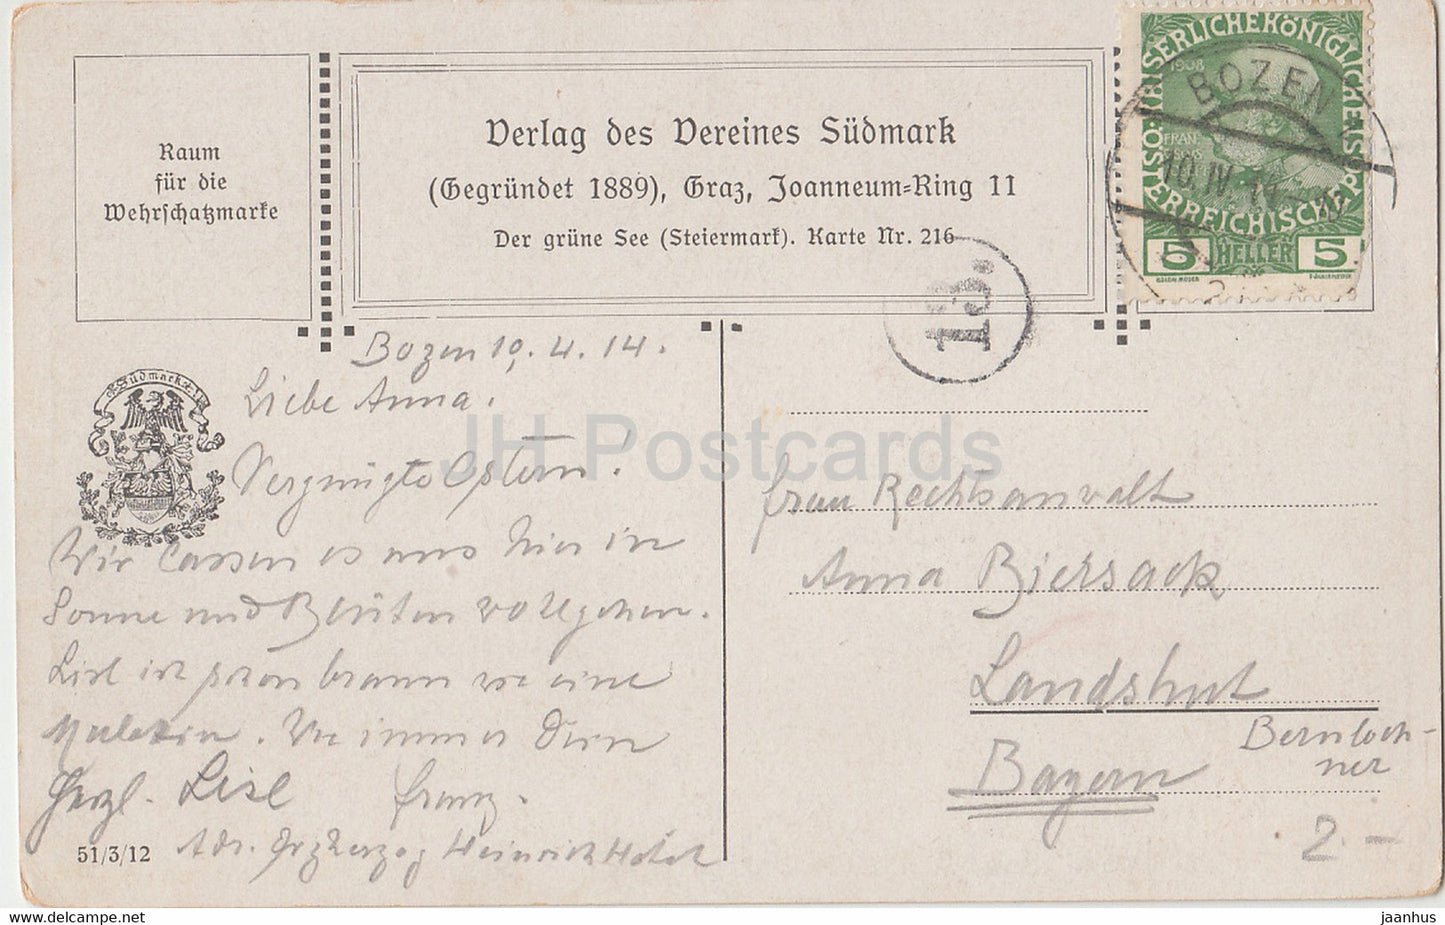 Der Grune See - Steiermark - illustration - Vereines Sudmark - 216 - old postcard - 1914 - Austria - used